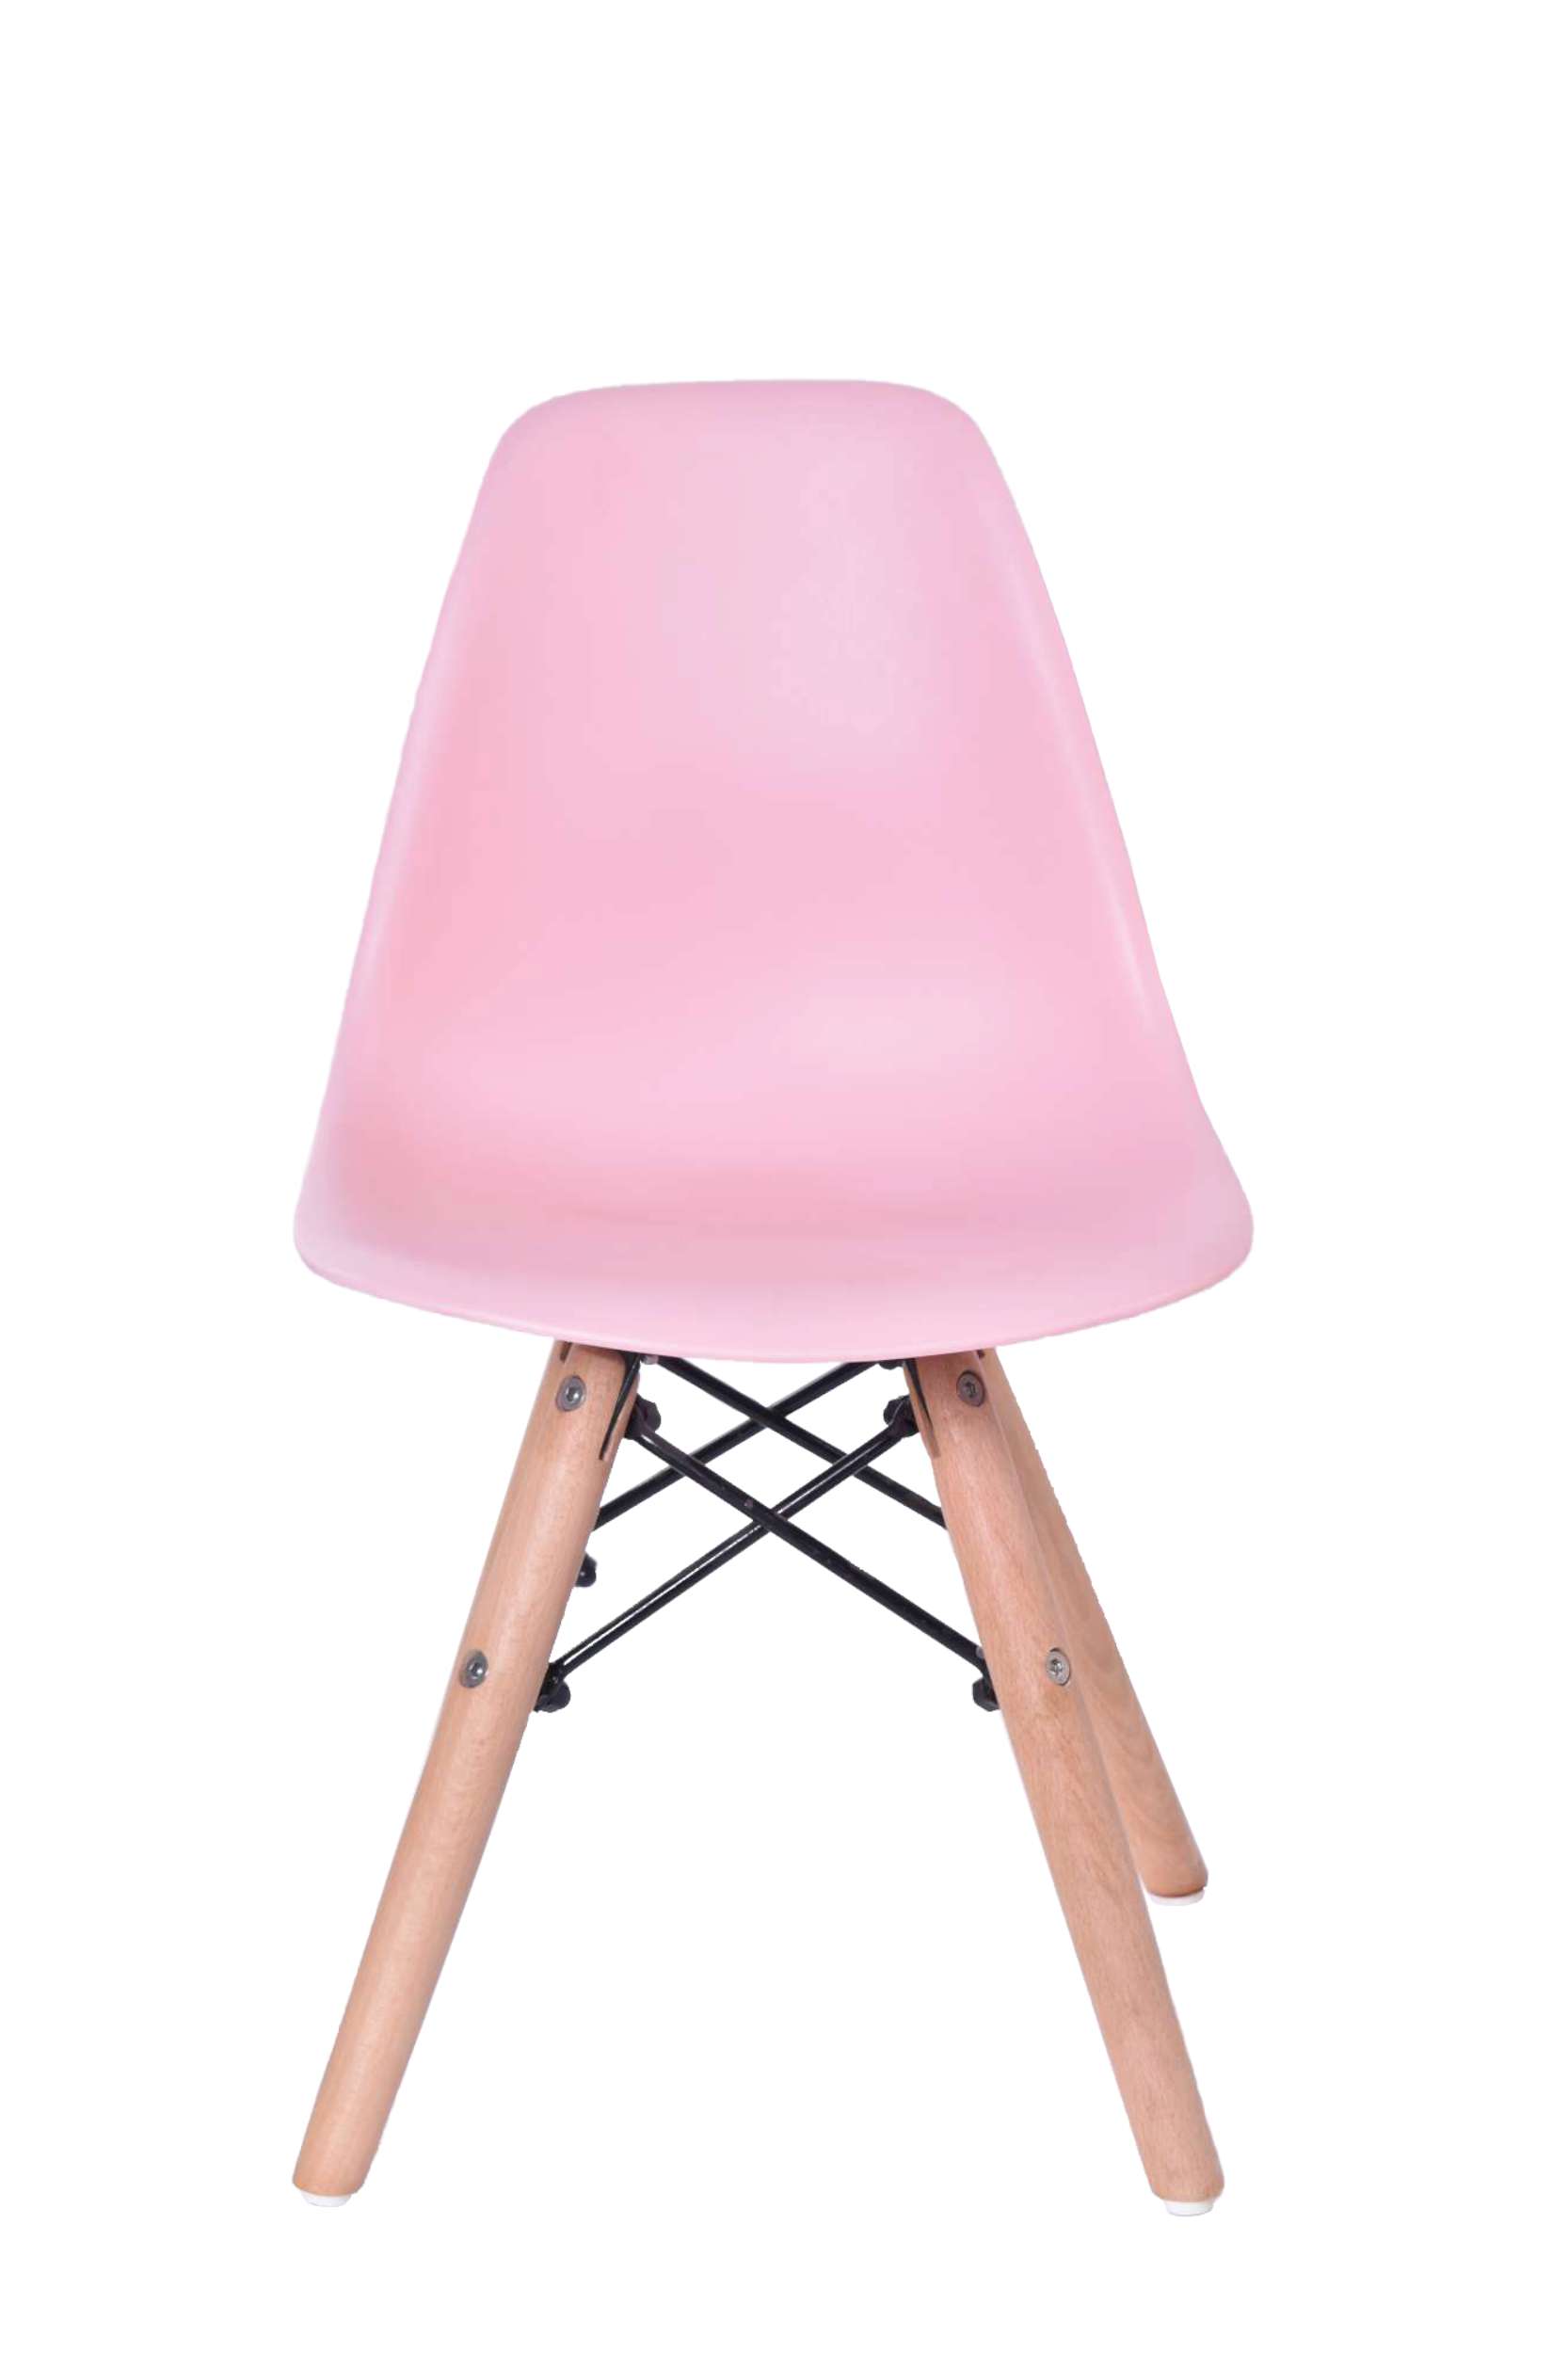 paris kids rozowe krzeslo dla dzieci